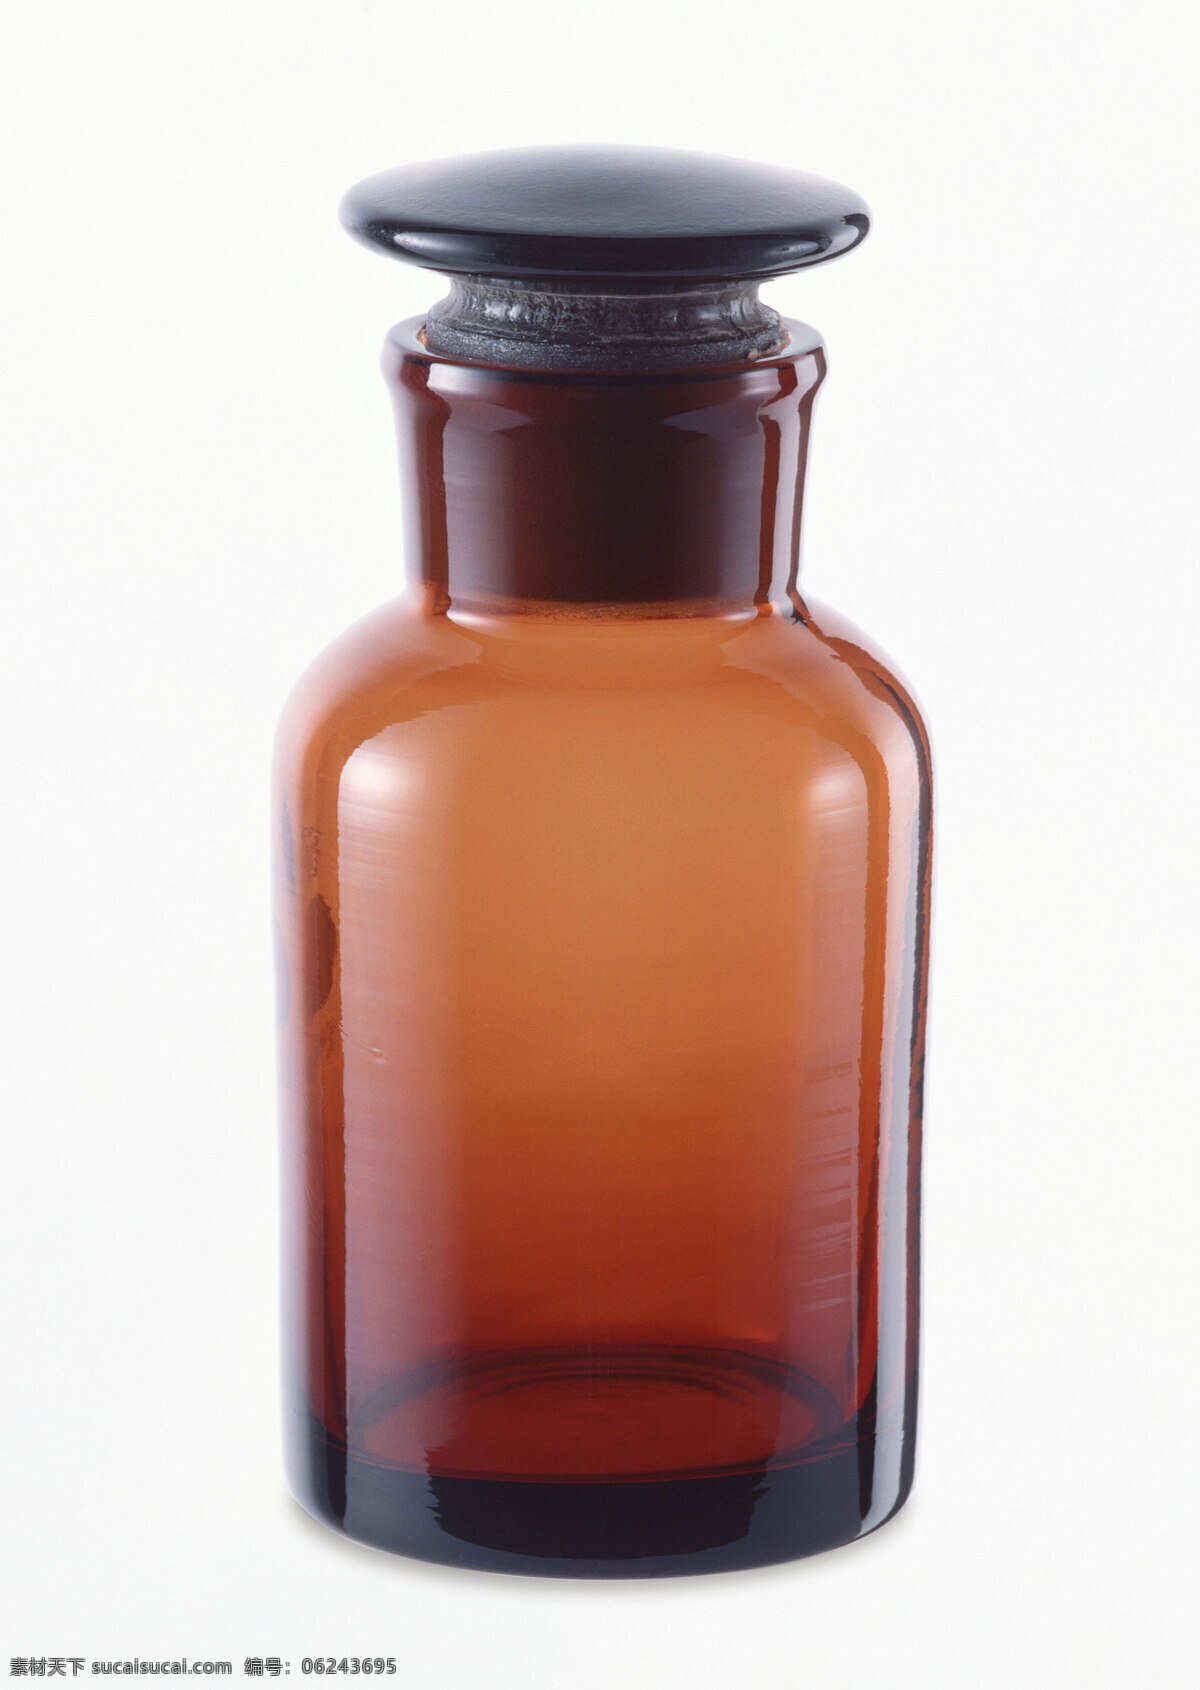 避光 有色 瓶子 vi应用素材 白背景 玻璃瓶 褐色 空白 透明 消毒药瓶子 瓶塞 空瓶子 医院医疗